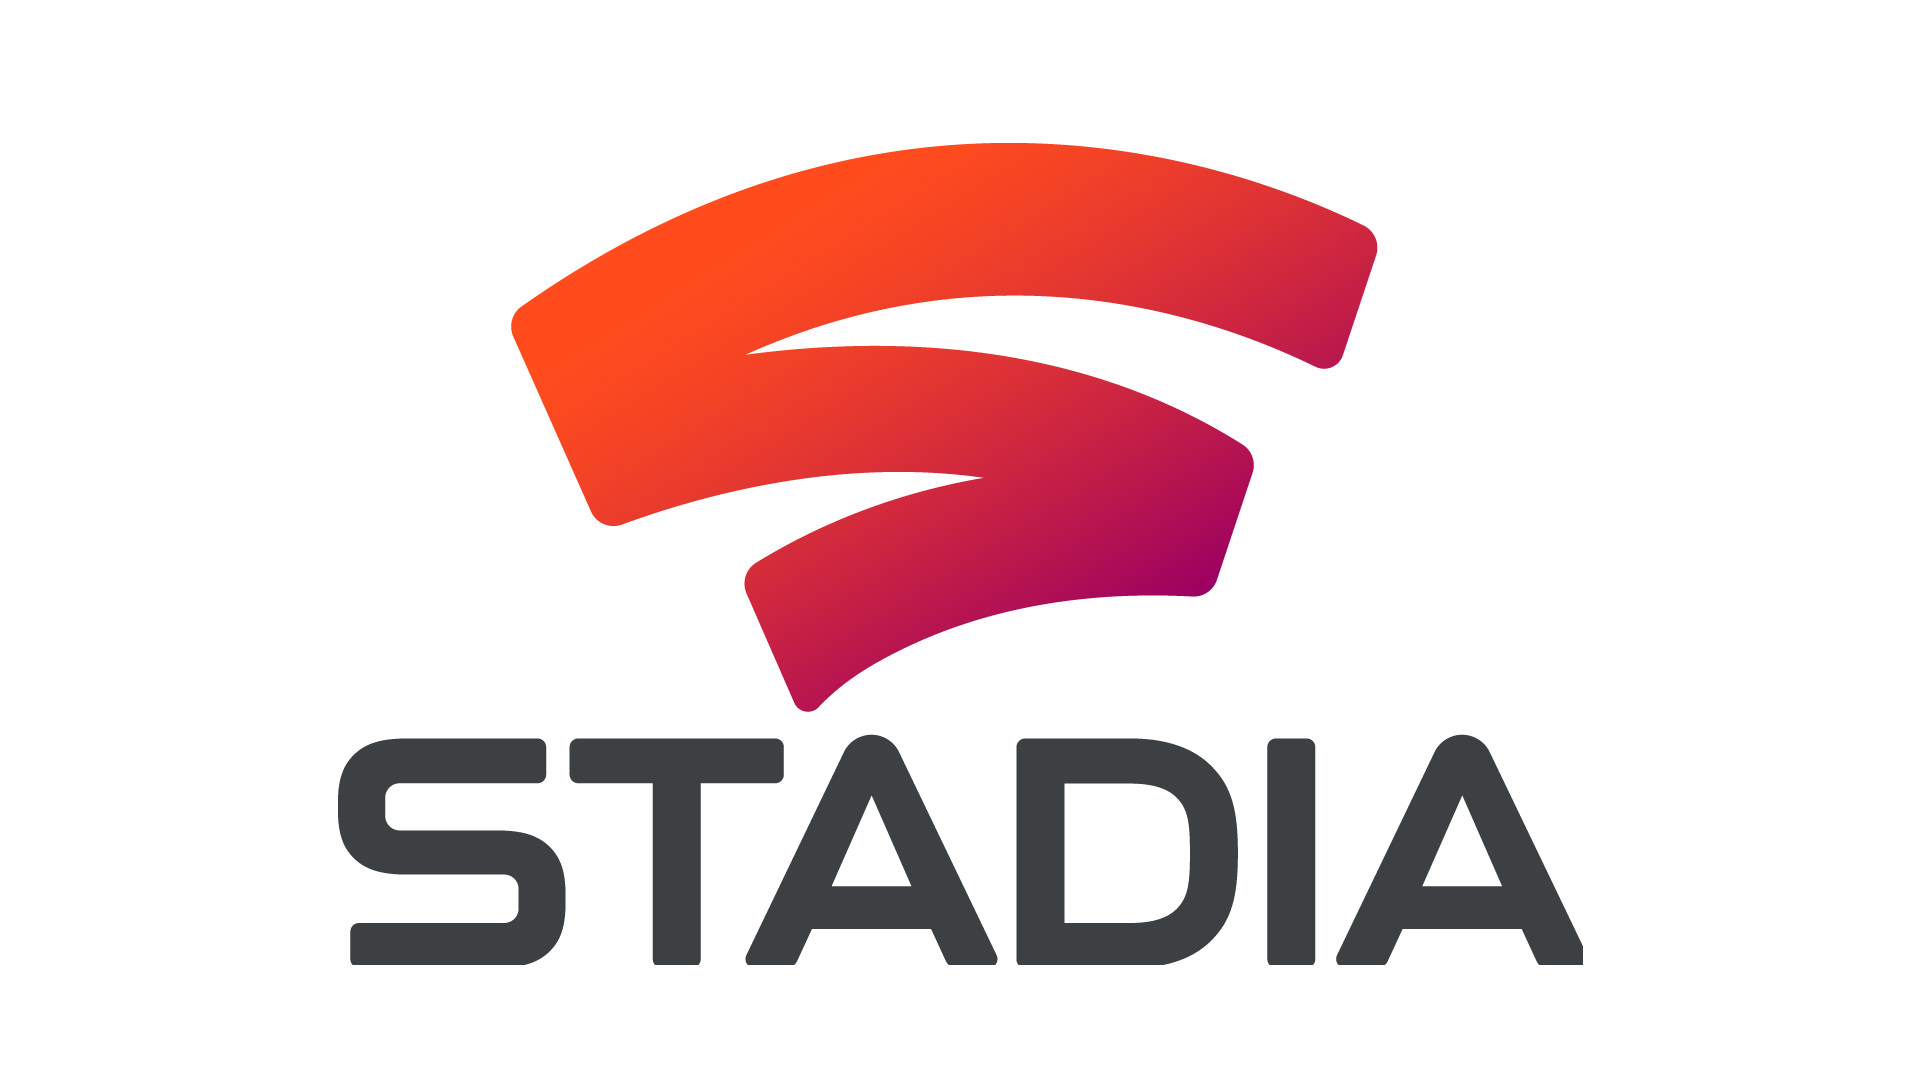 google stadia logo  Image of google stadia logo